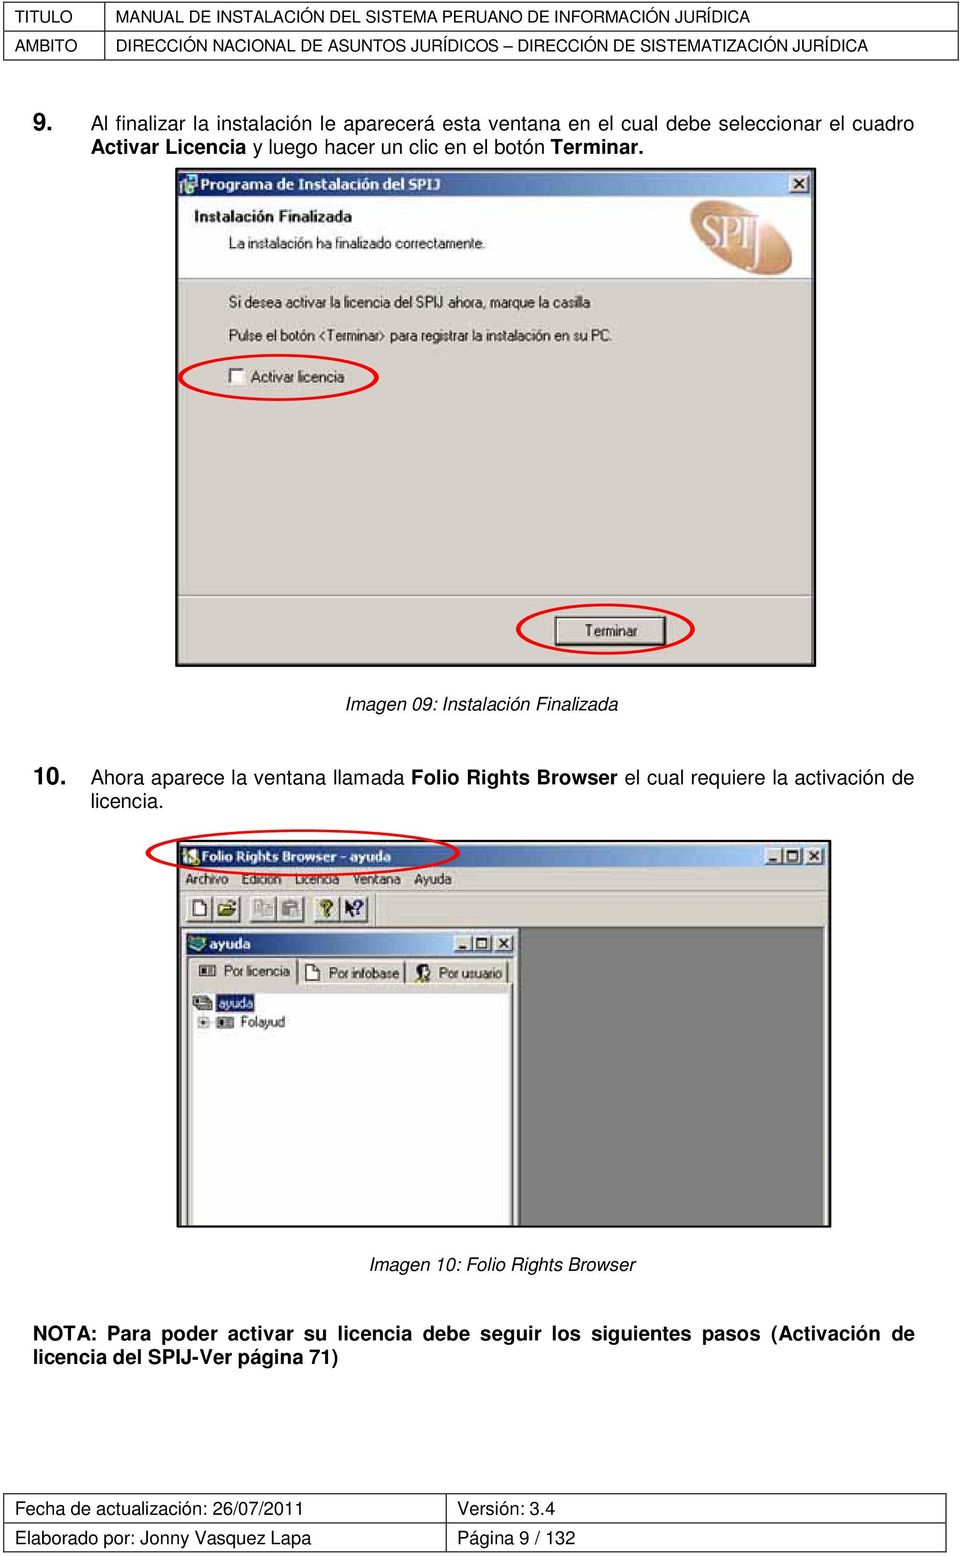 Ahora aparece la ventana llamada Folio Rights Browser el cual requiere la activación de licencia.